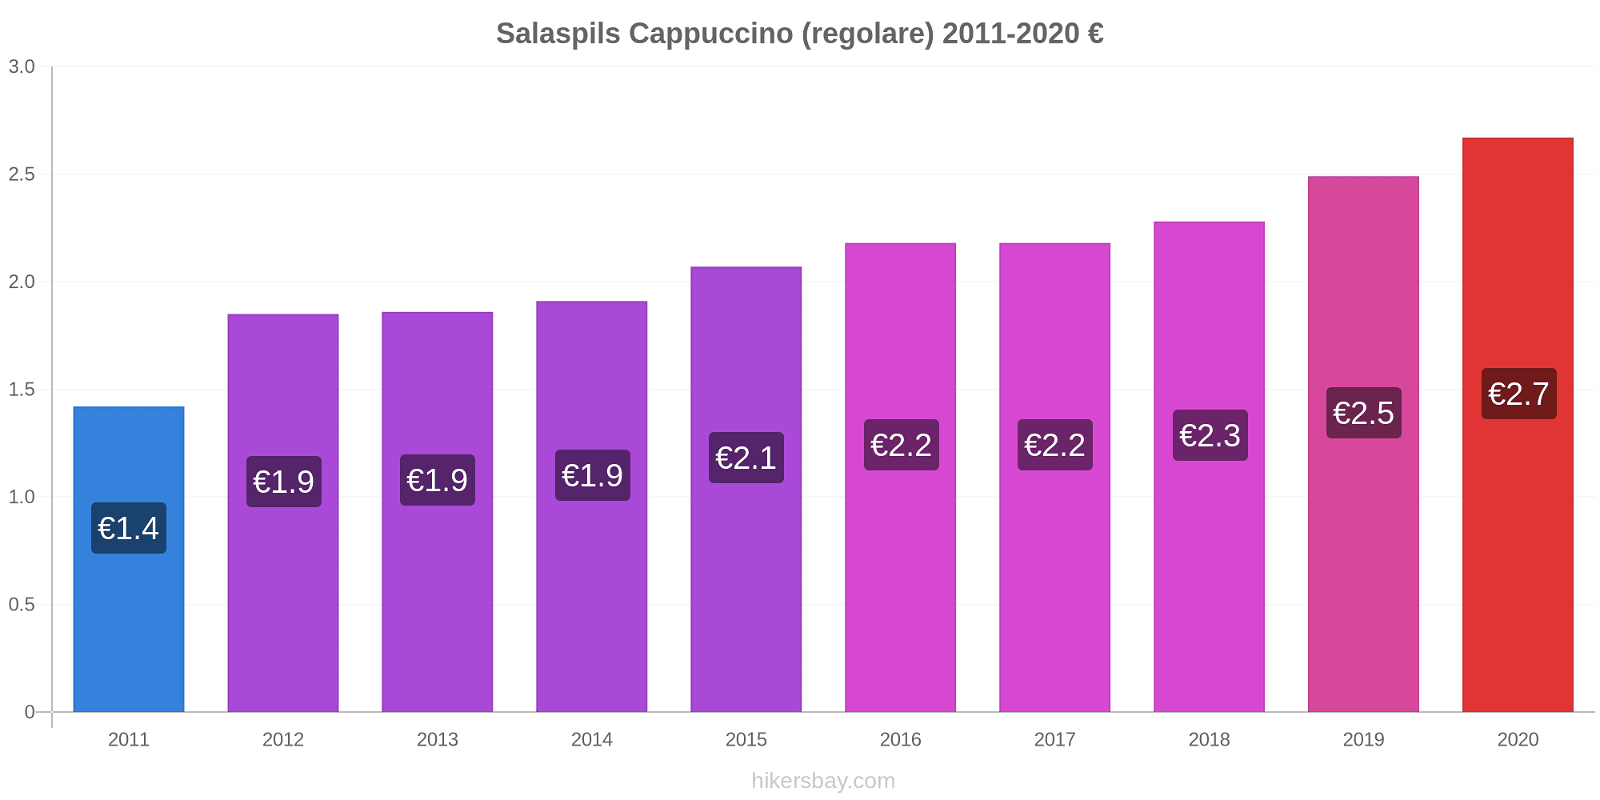 Salaspils variazioni di prezzo Cappuccino (normale) hikersbay.com